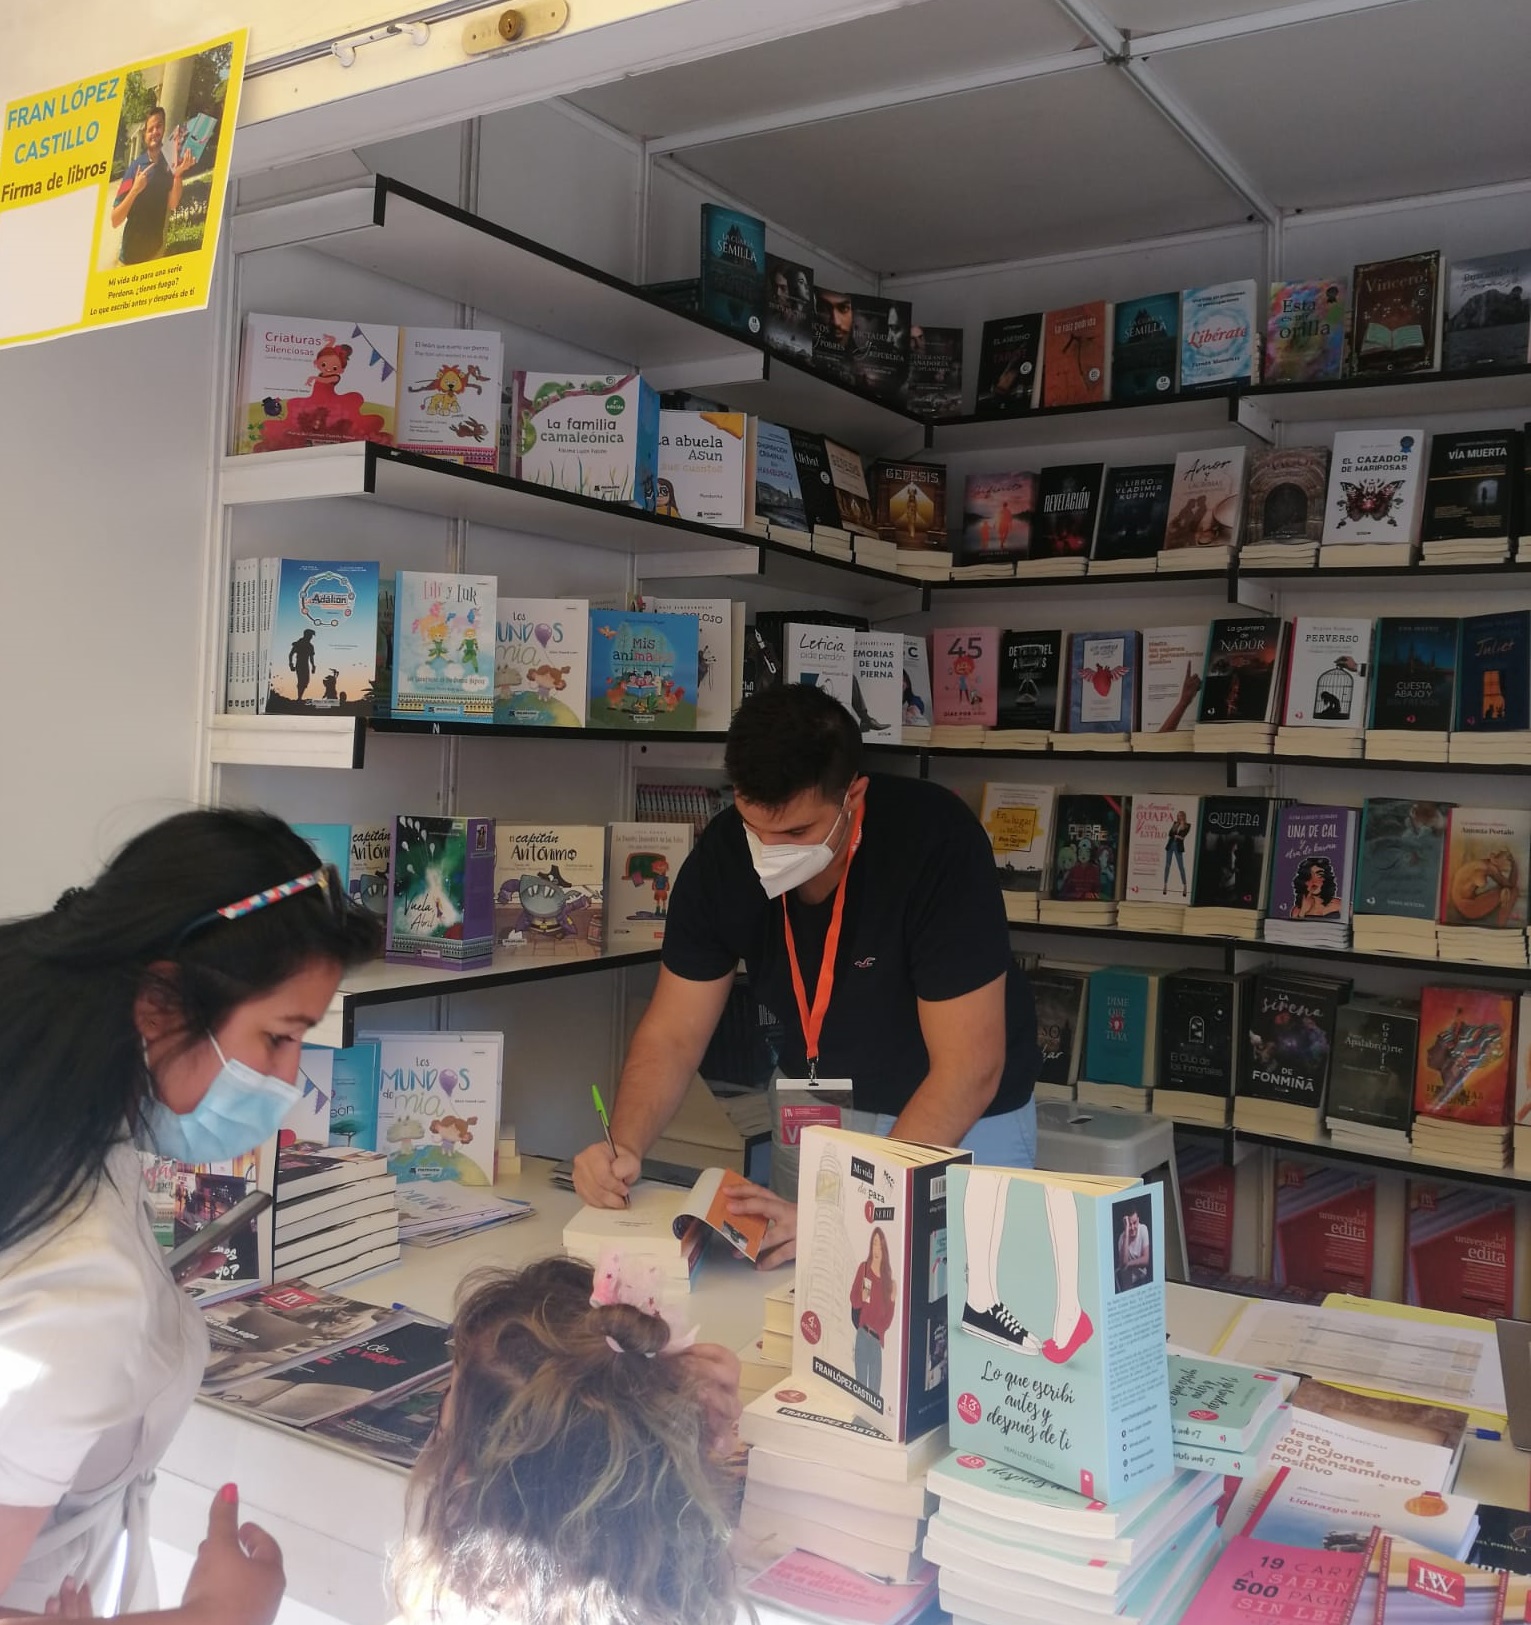 El escritor Fran López Castillo triunfa en la Feria del libro de Madrid